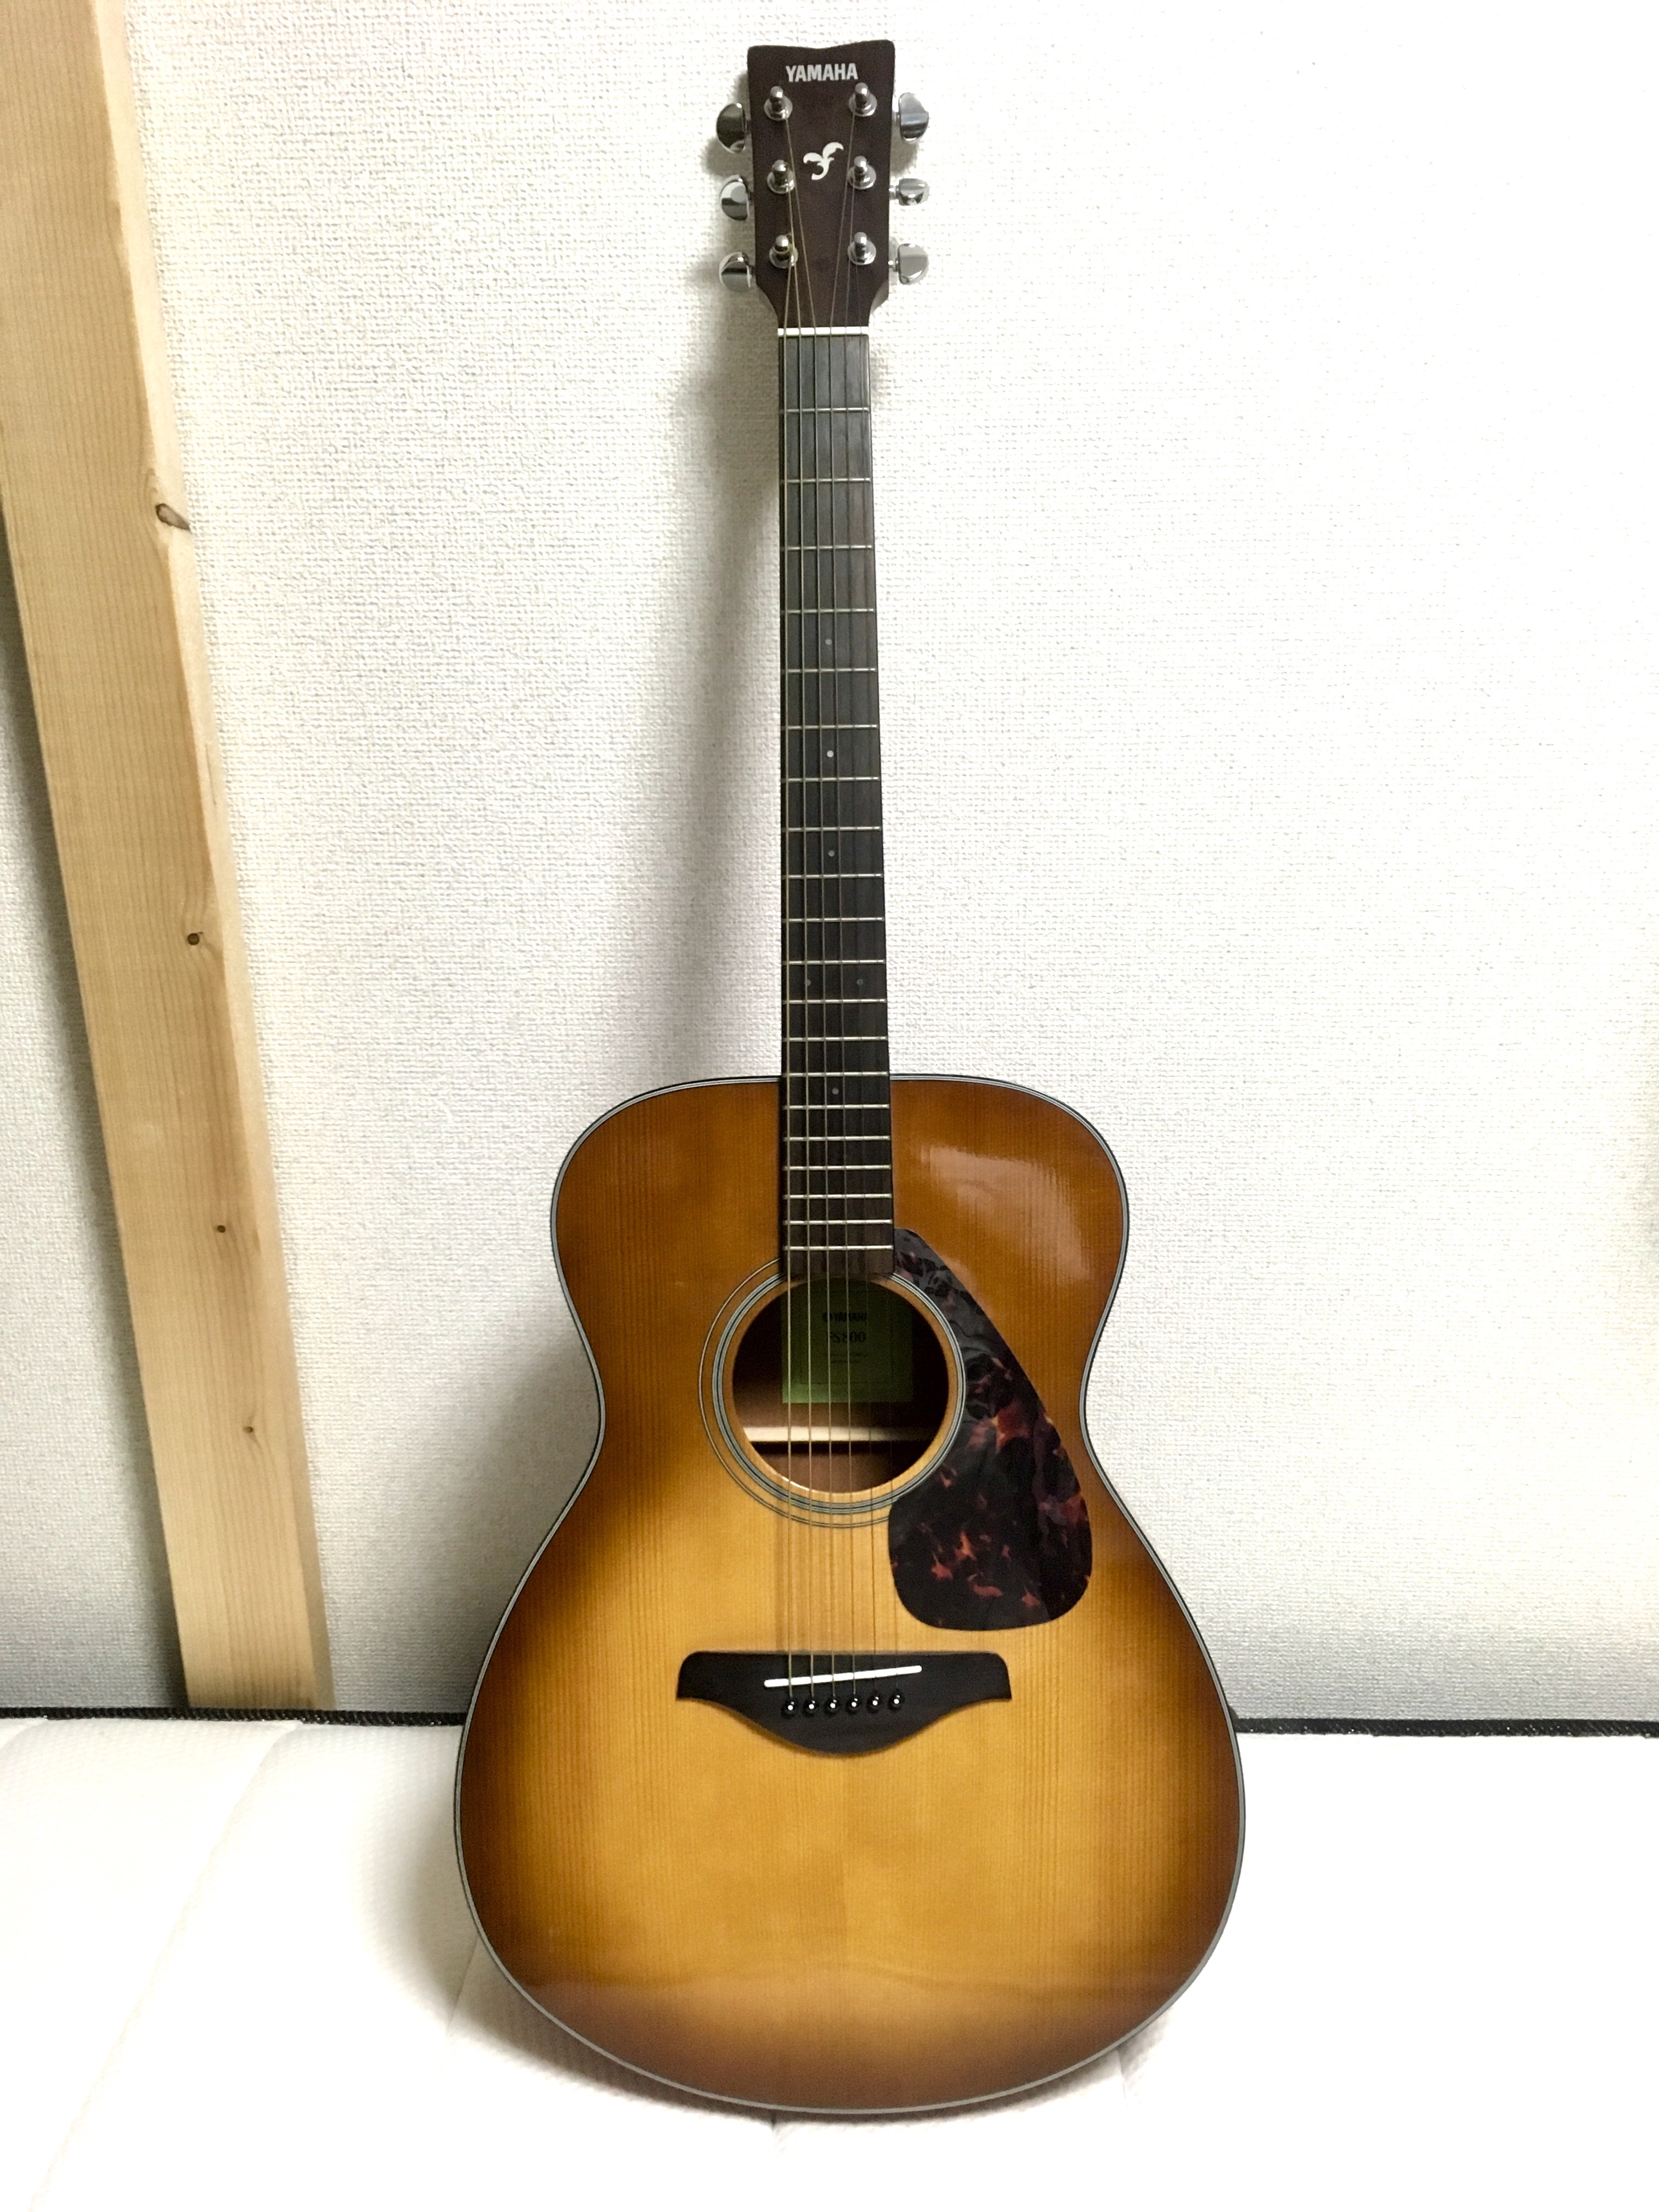 きやすくな アコースティックギター FG830 ヤマハ っており